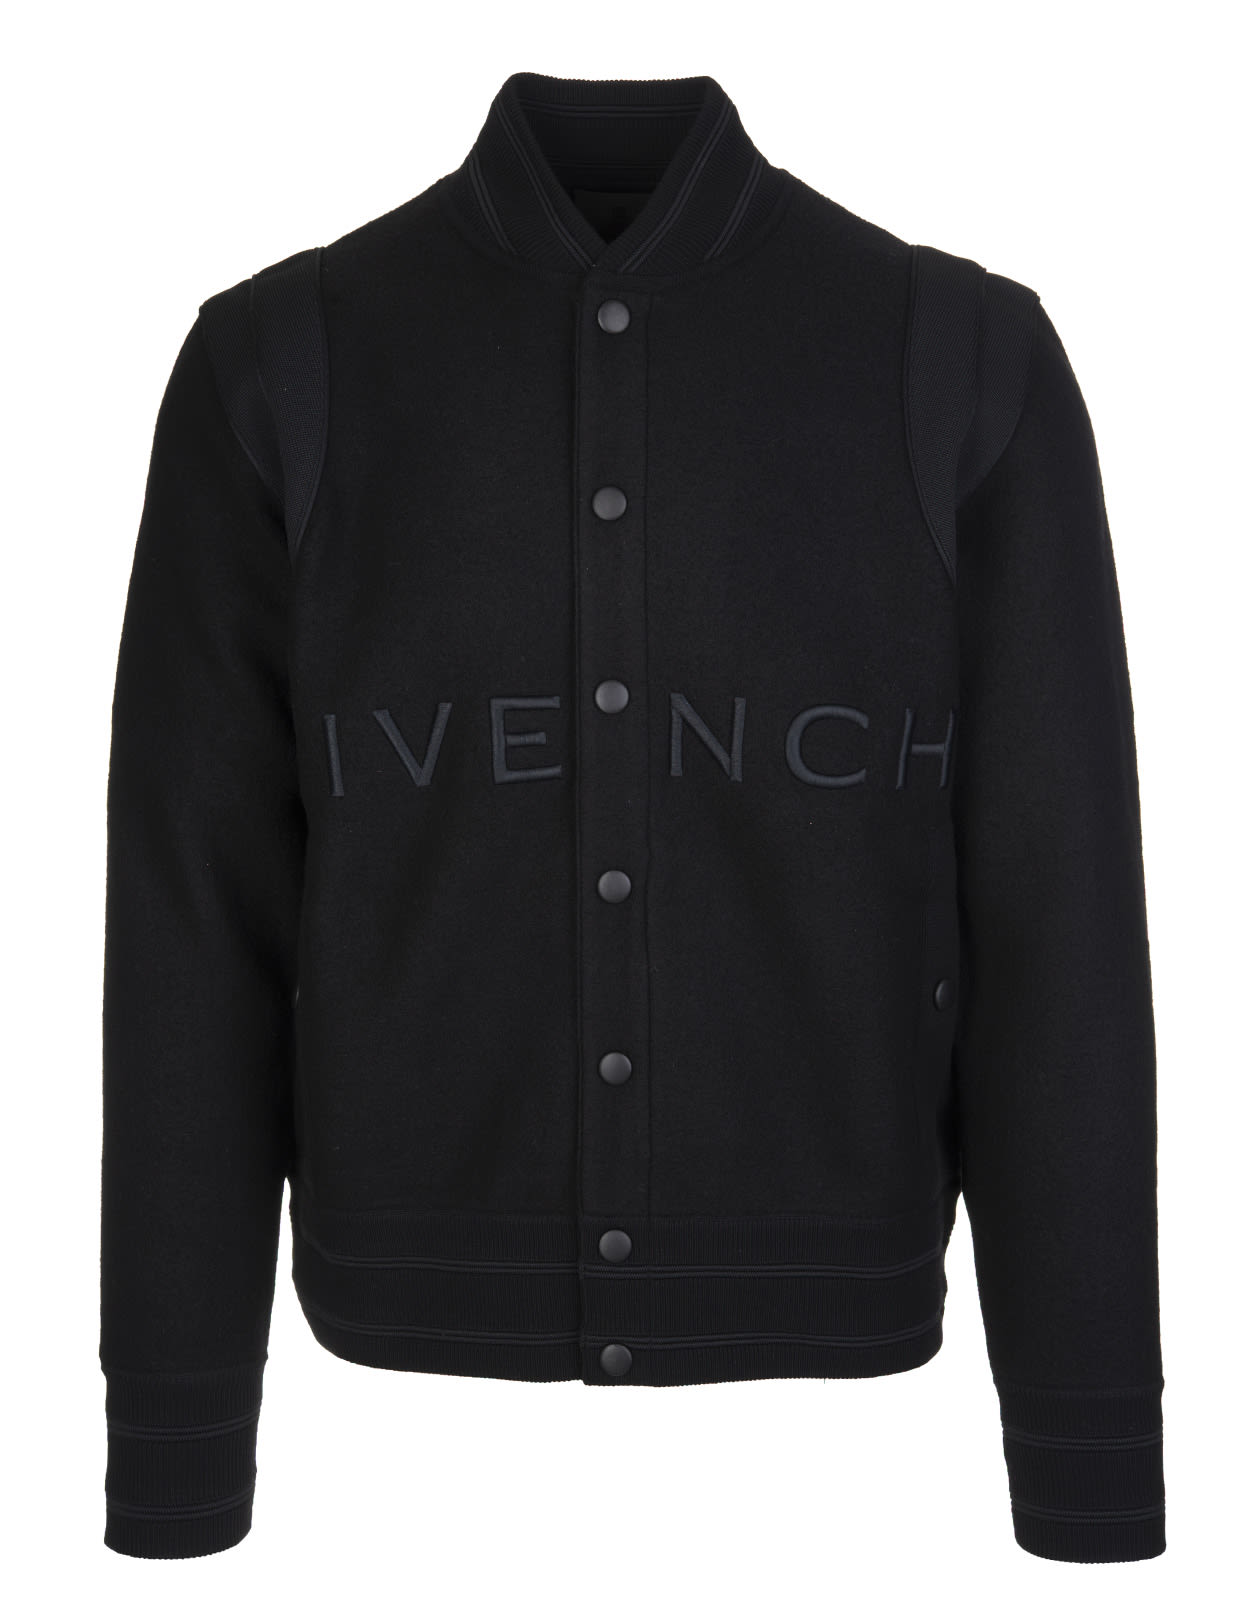 Givenchy Man Black Wool Felt Bomber Jacket With Logo